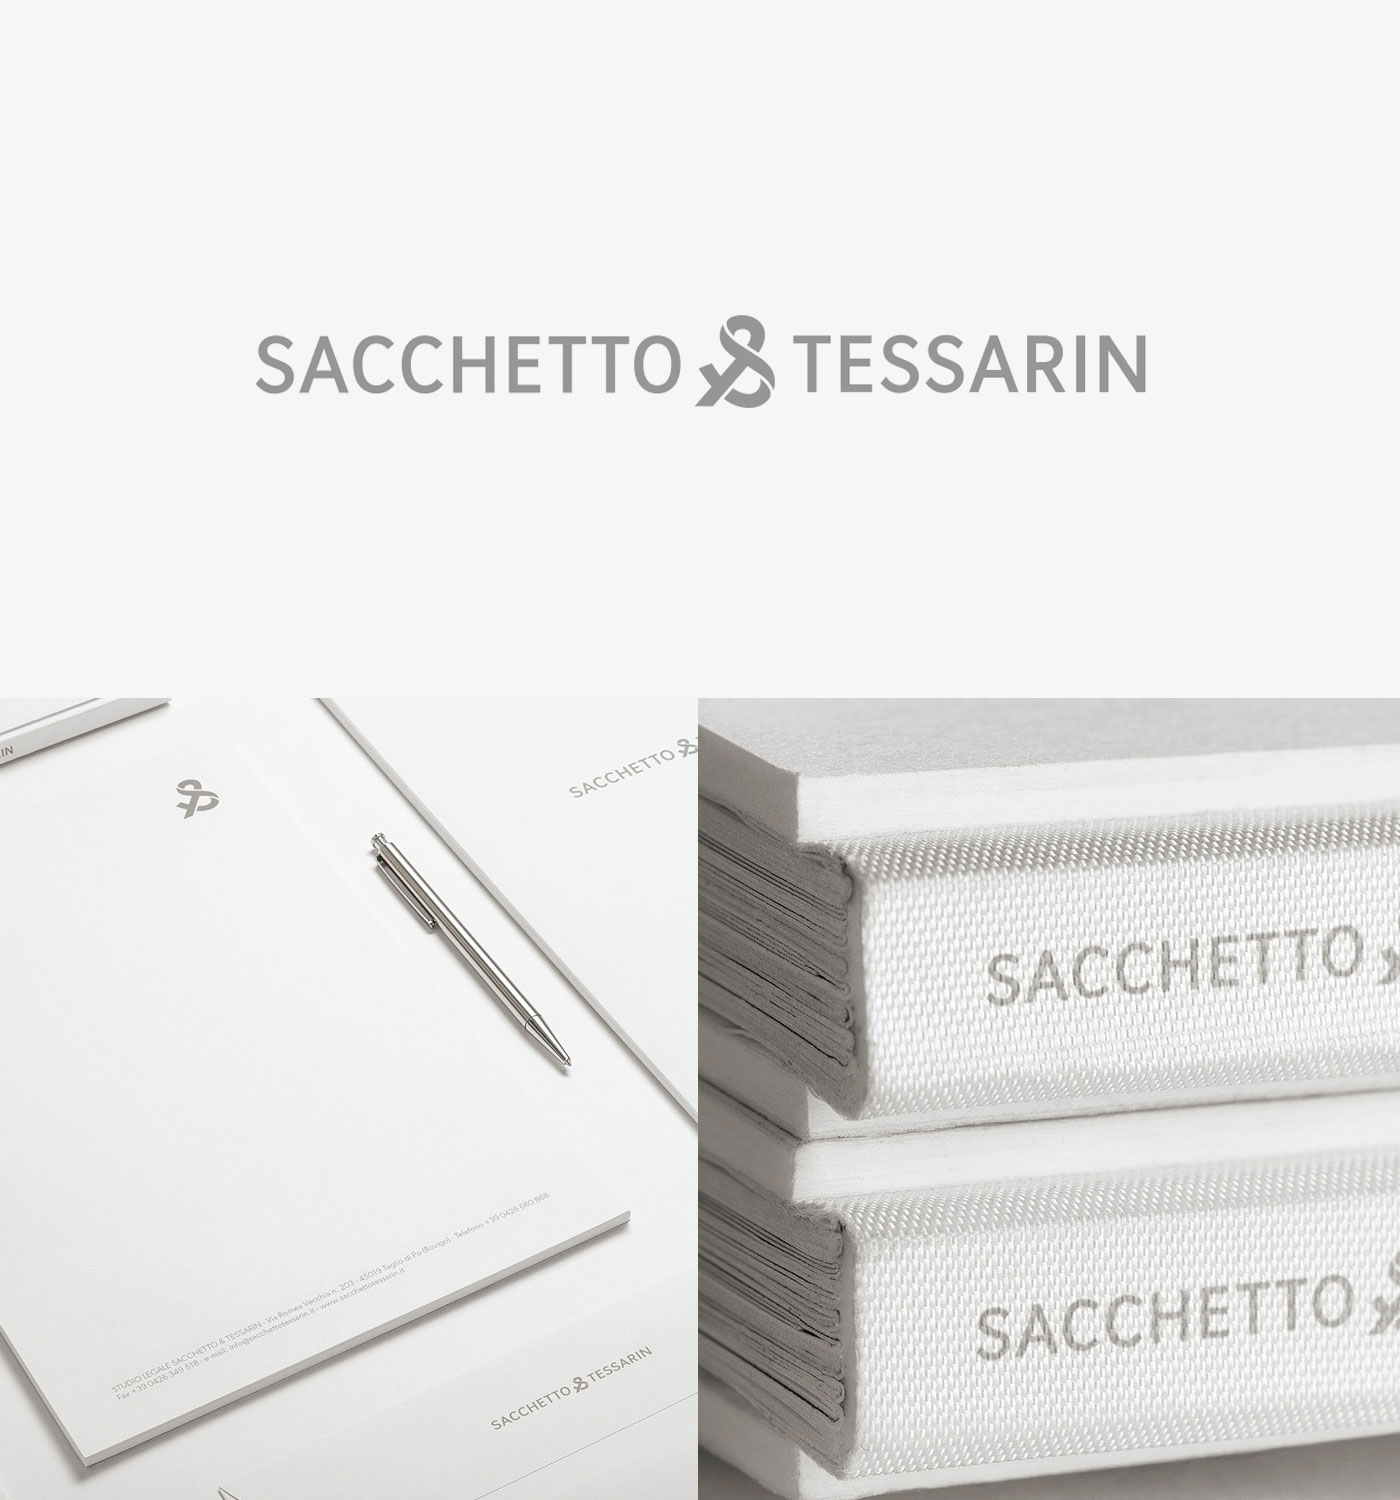 Sacchetto & Tessarin Designed by Concreate Studio